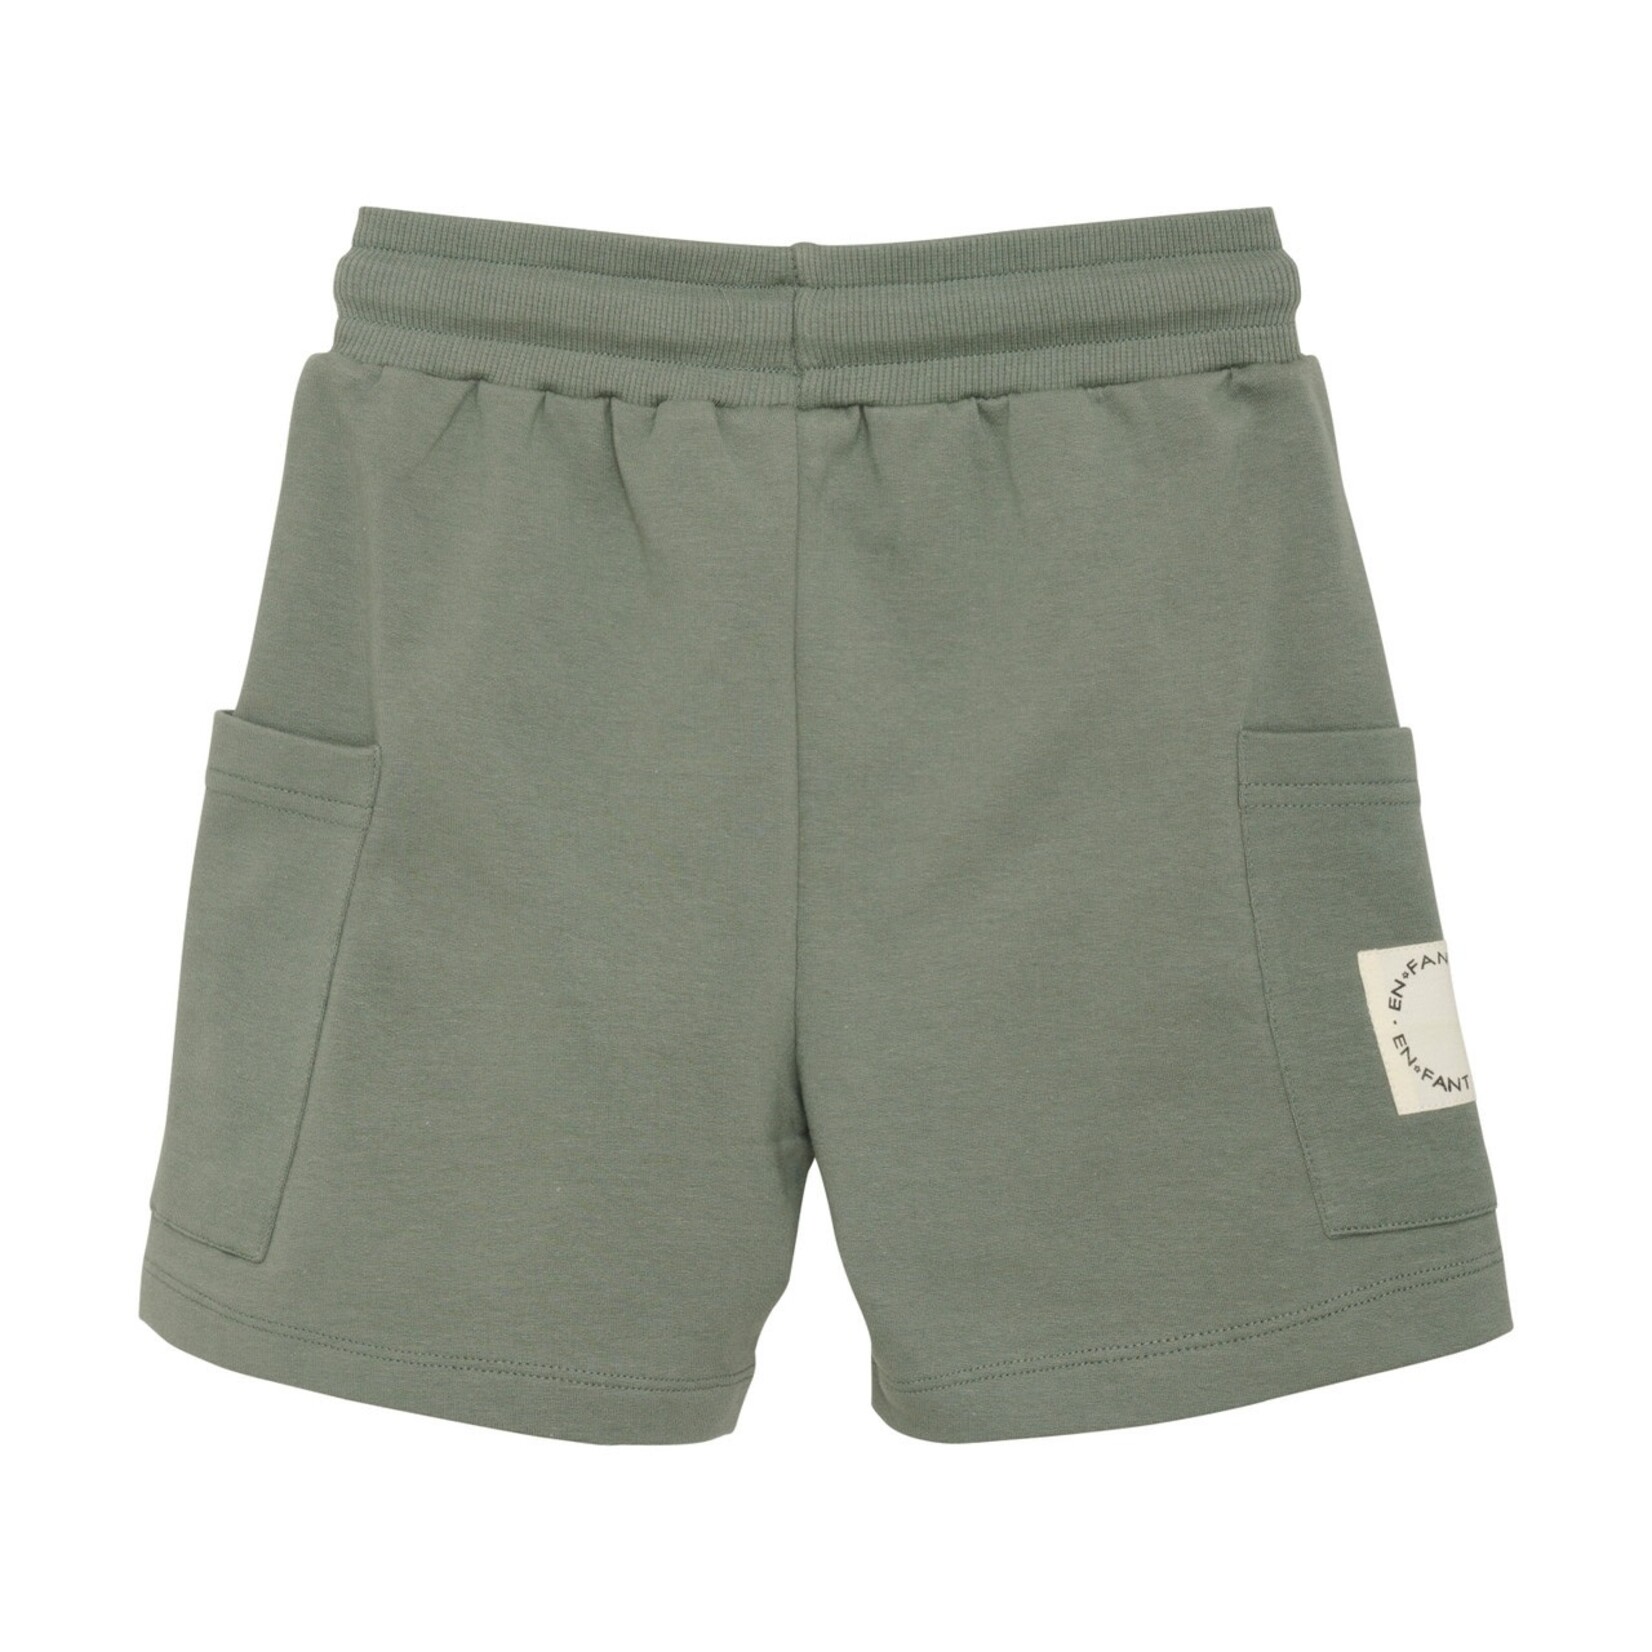 Enfant ENFANT - Verdigris Cotton Sweat Shorts with Pockets